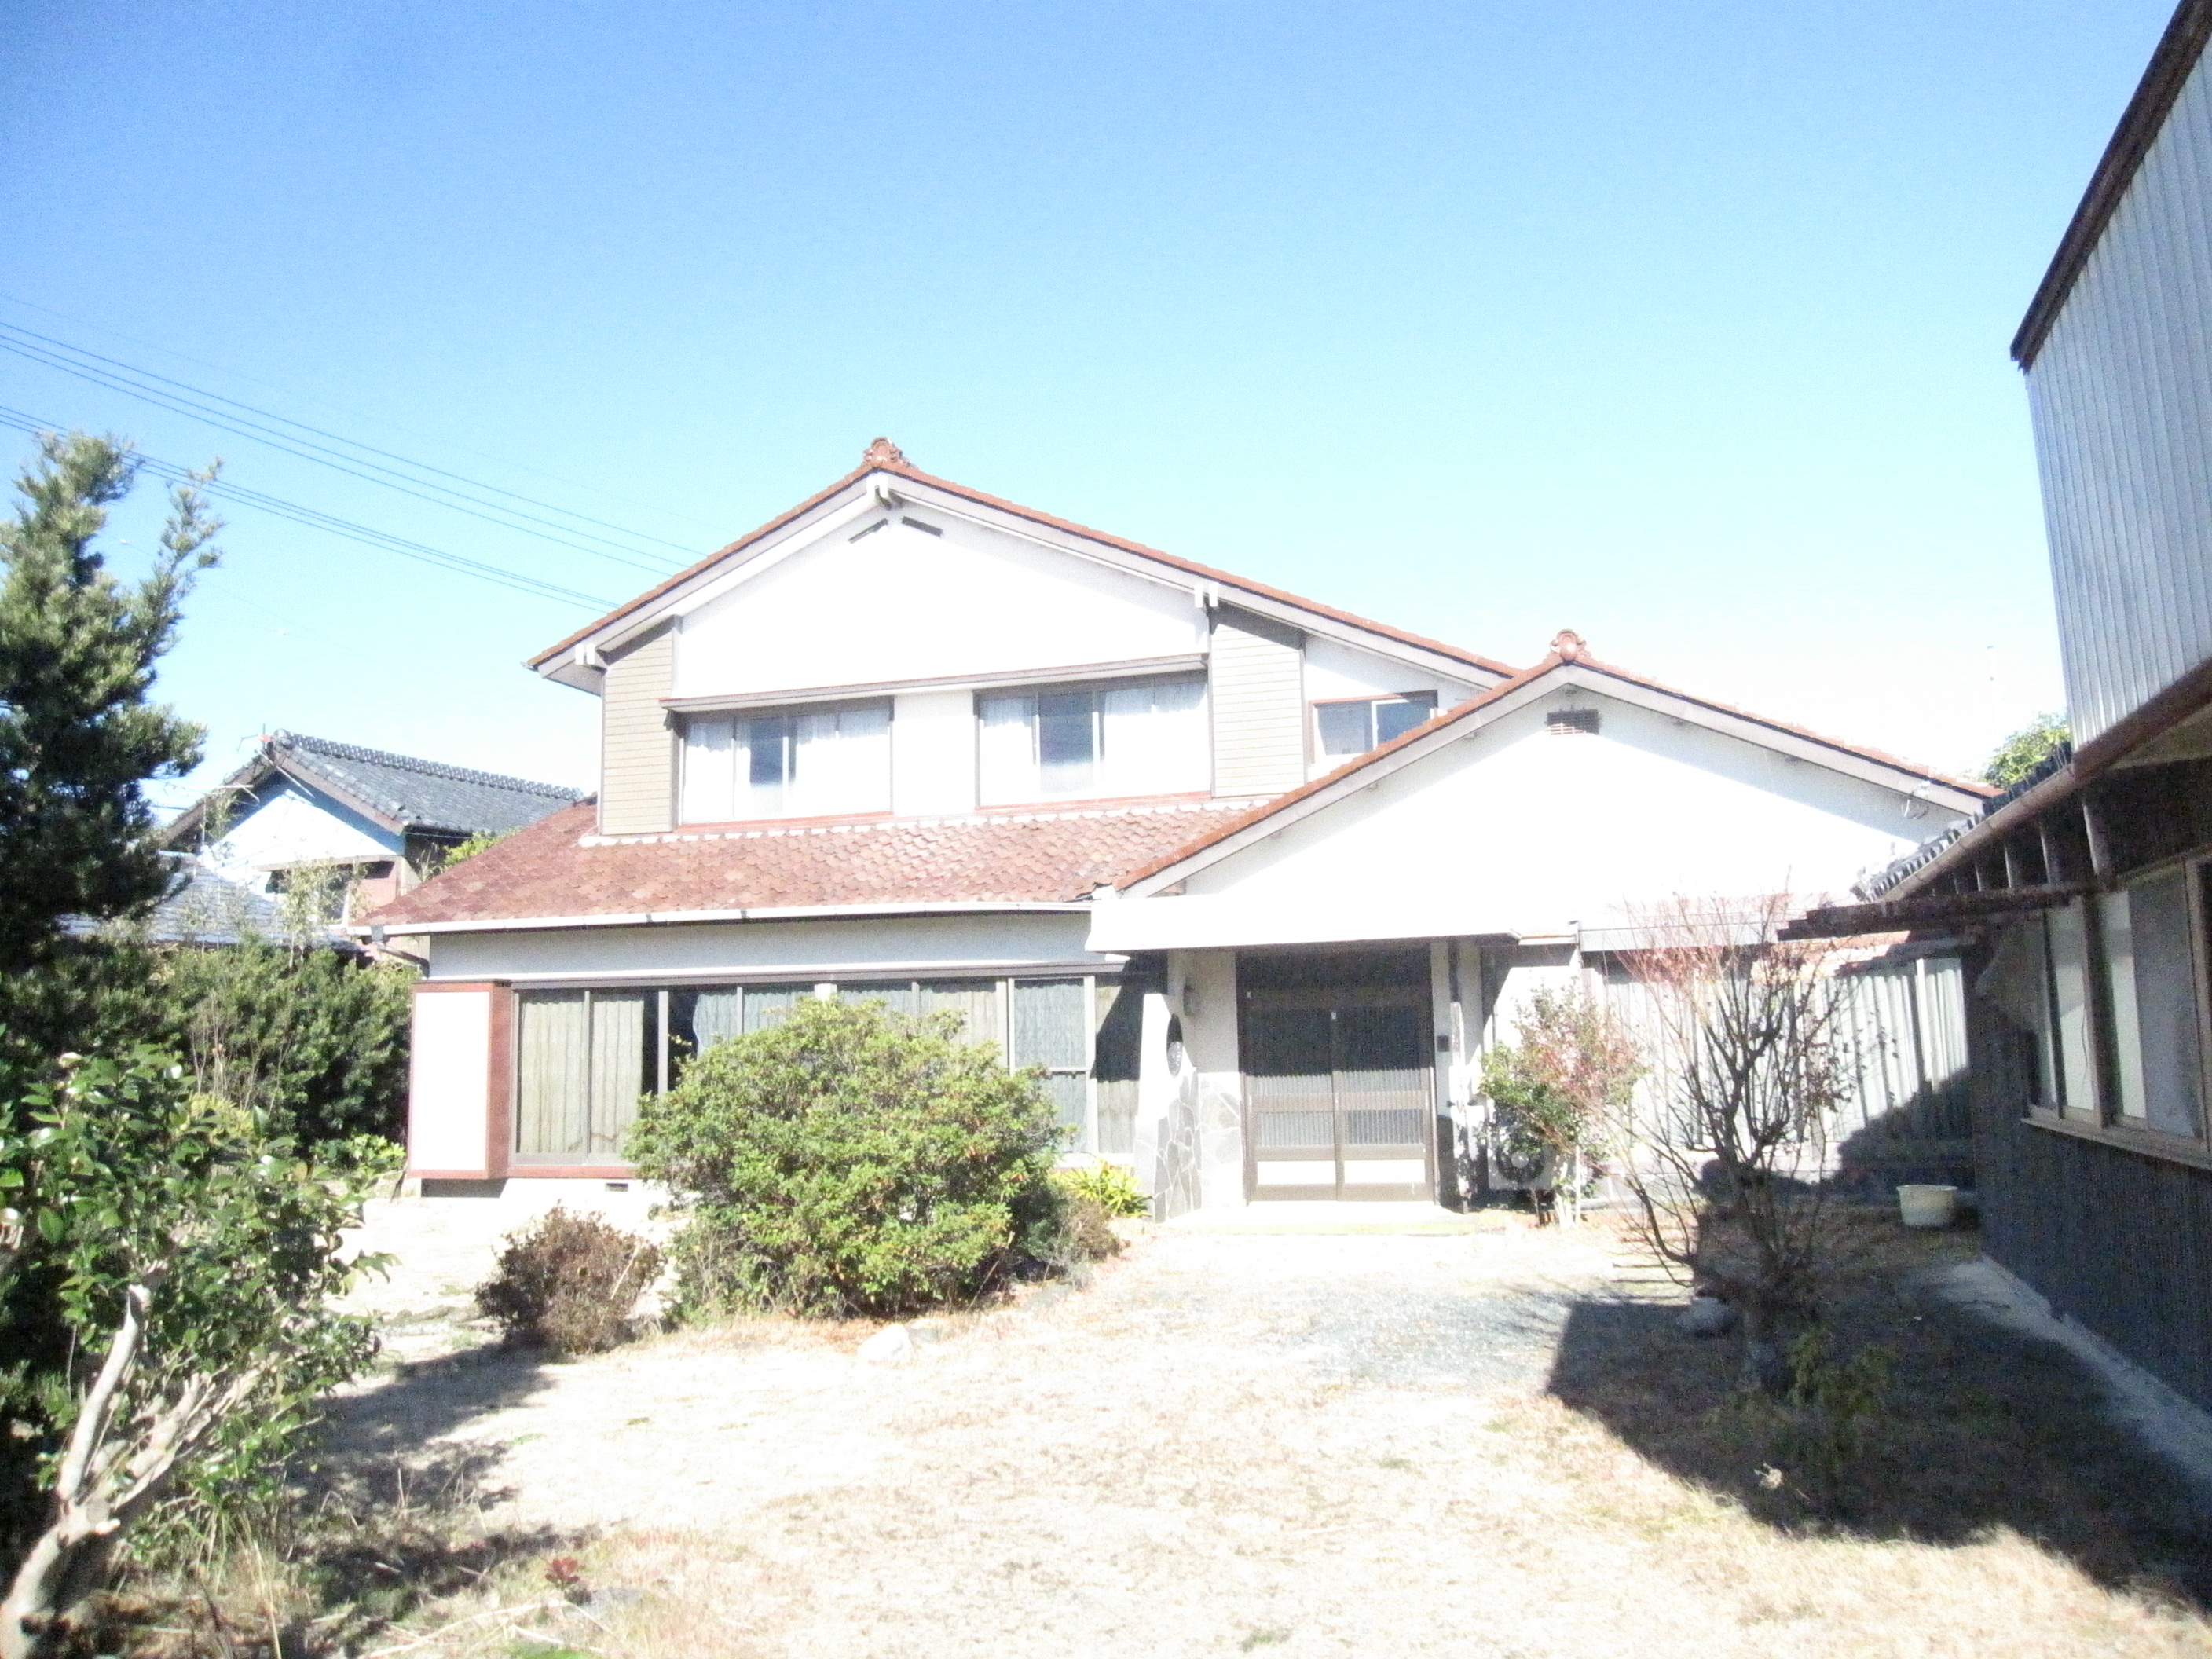 掛川市千浜の中古住宅解体し売土地として北川不動産が売り出しました